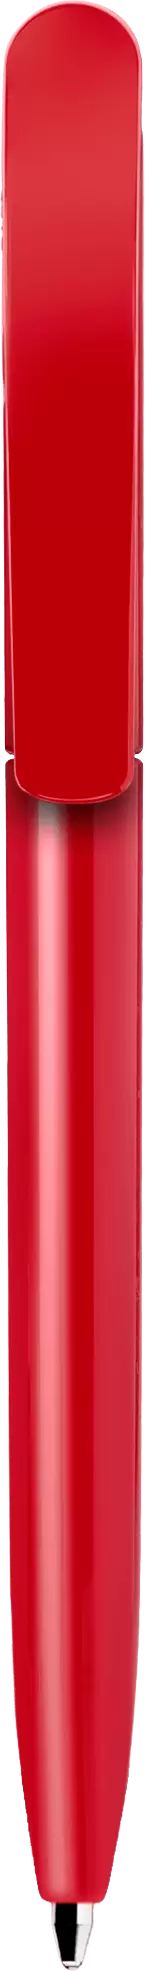 Ручка VIVALDI Красная полностью 1336-03